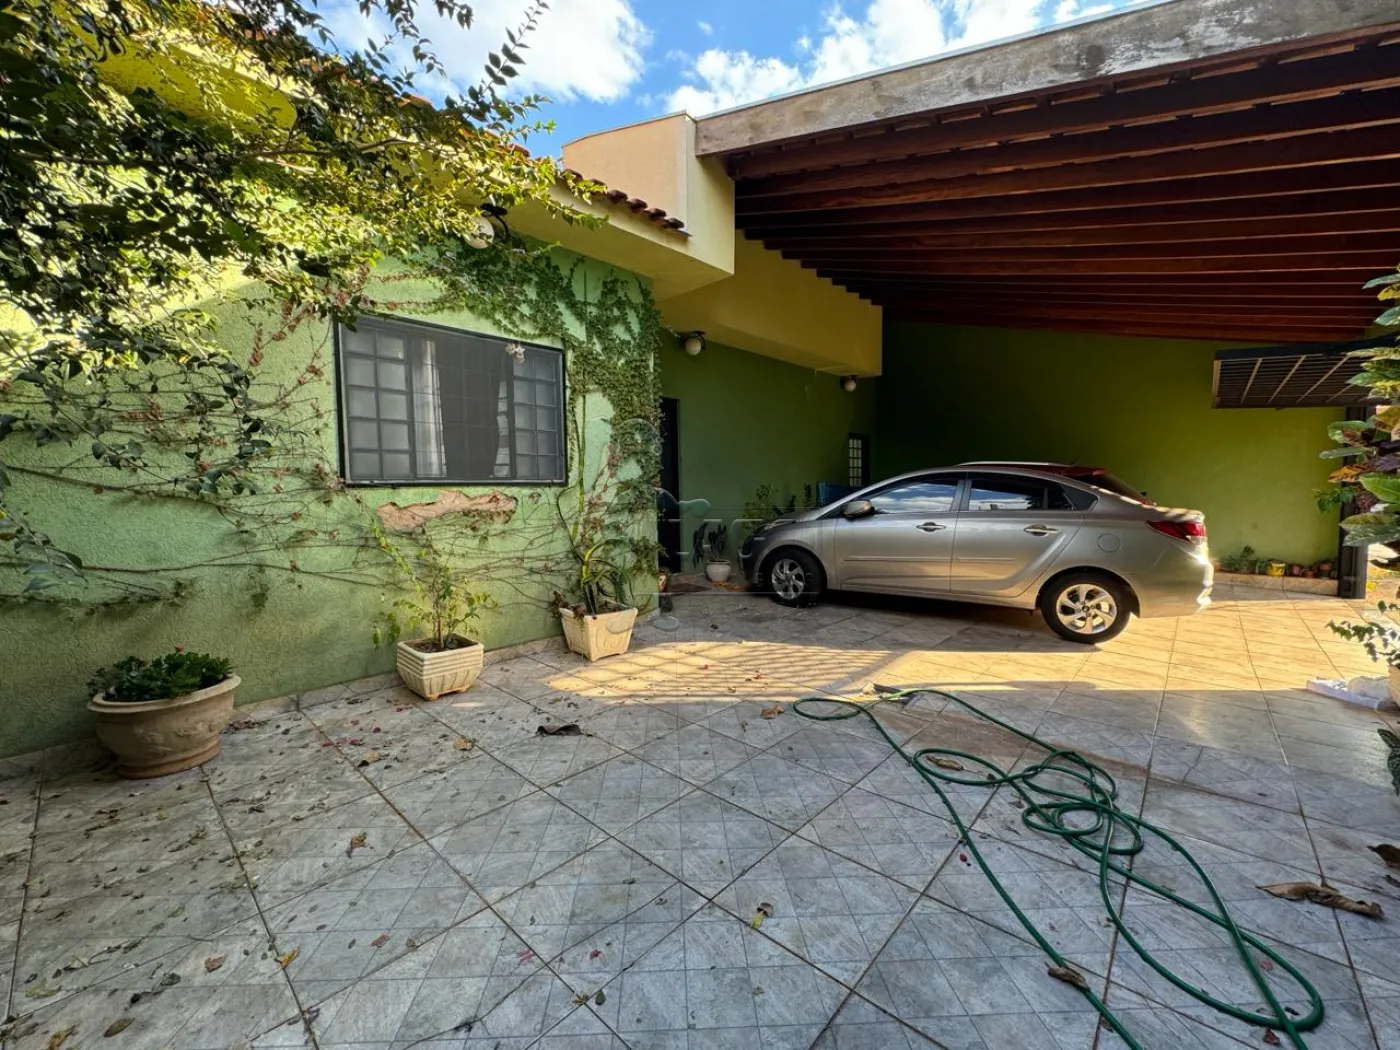 Comprar Casa / Padrão em Ribeirão Preto R$ 400.000,00 - Foto 19